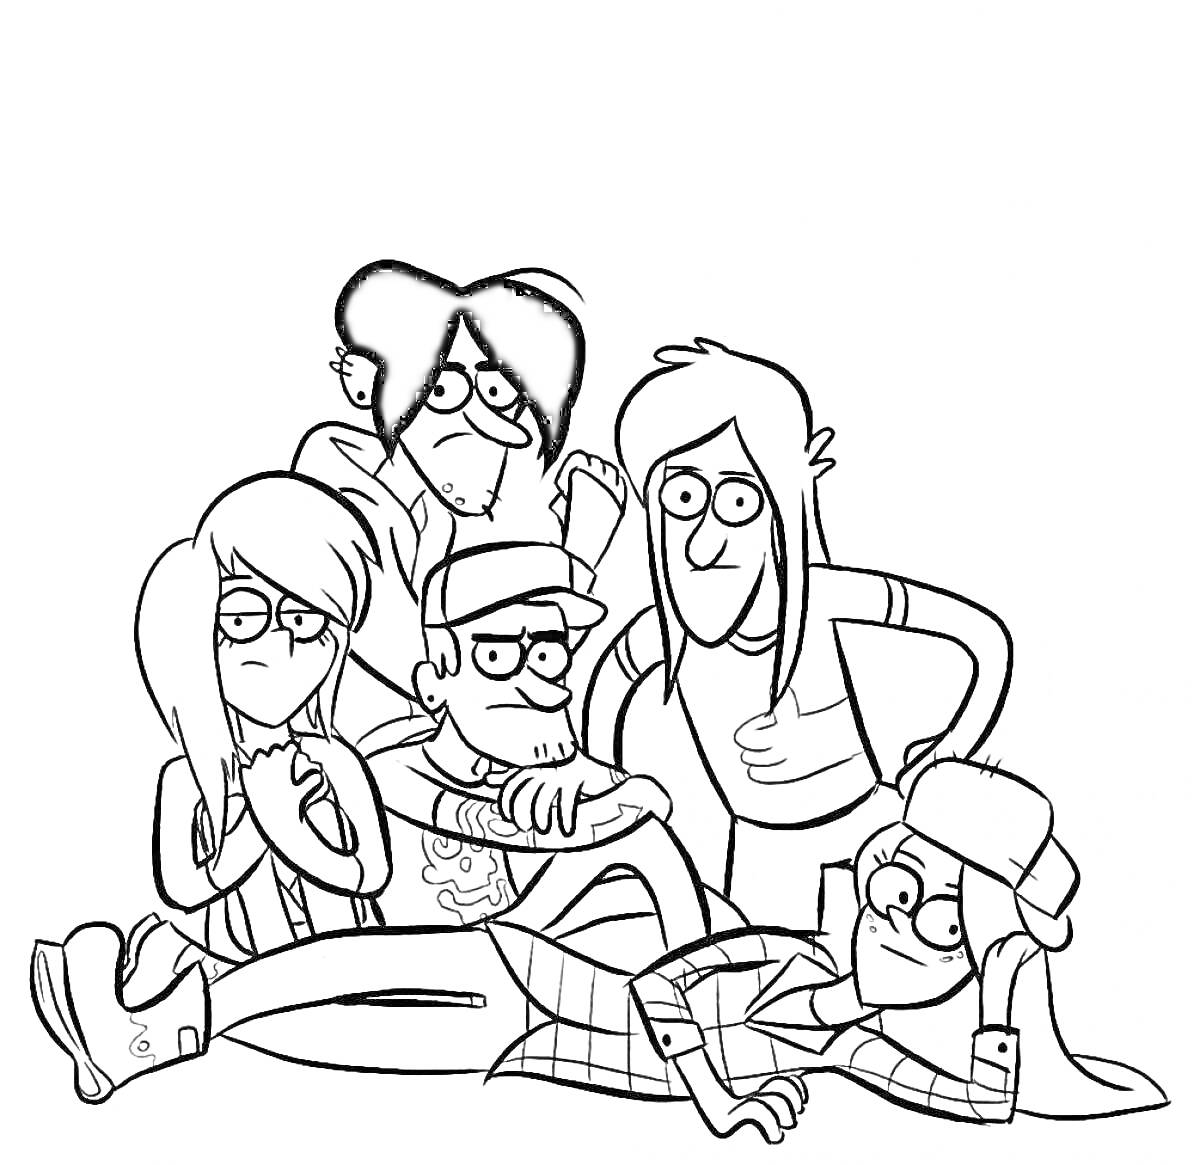 Раскраска Группа из пяти людей из мультфильма, одетых в повседневную одежду, сидящих и лежащих вместе в куче